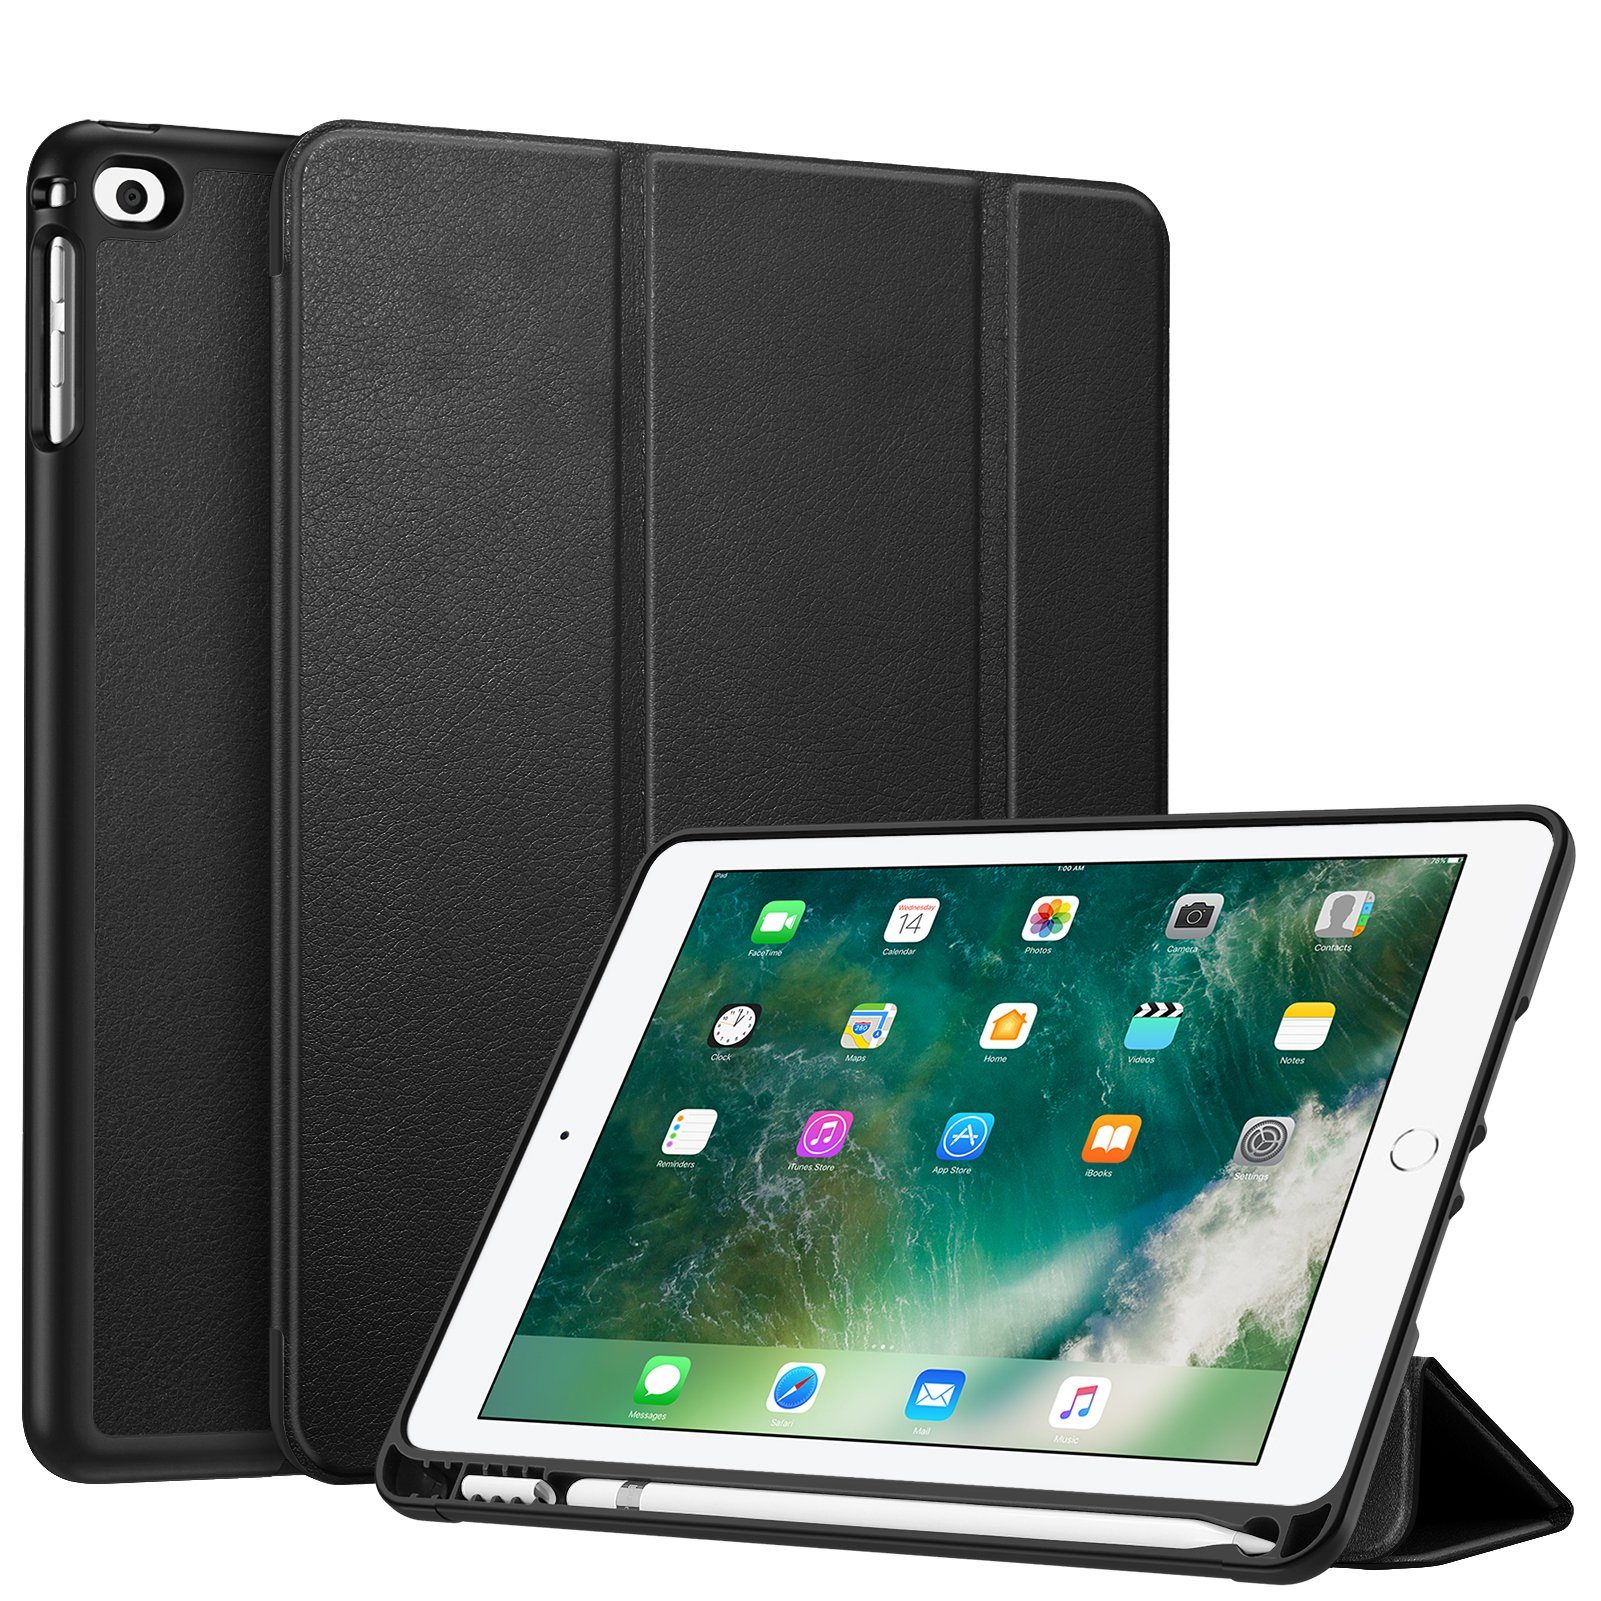 Fintie Tablet-Hülle für iPad 9.7 2018/2017 / iPad Air 2 2014 / iPad Air  2013, mit stifthalter und Soft TPU Rückseite Abdeckung, Auto Schlaf/Wach